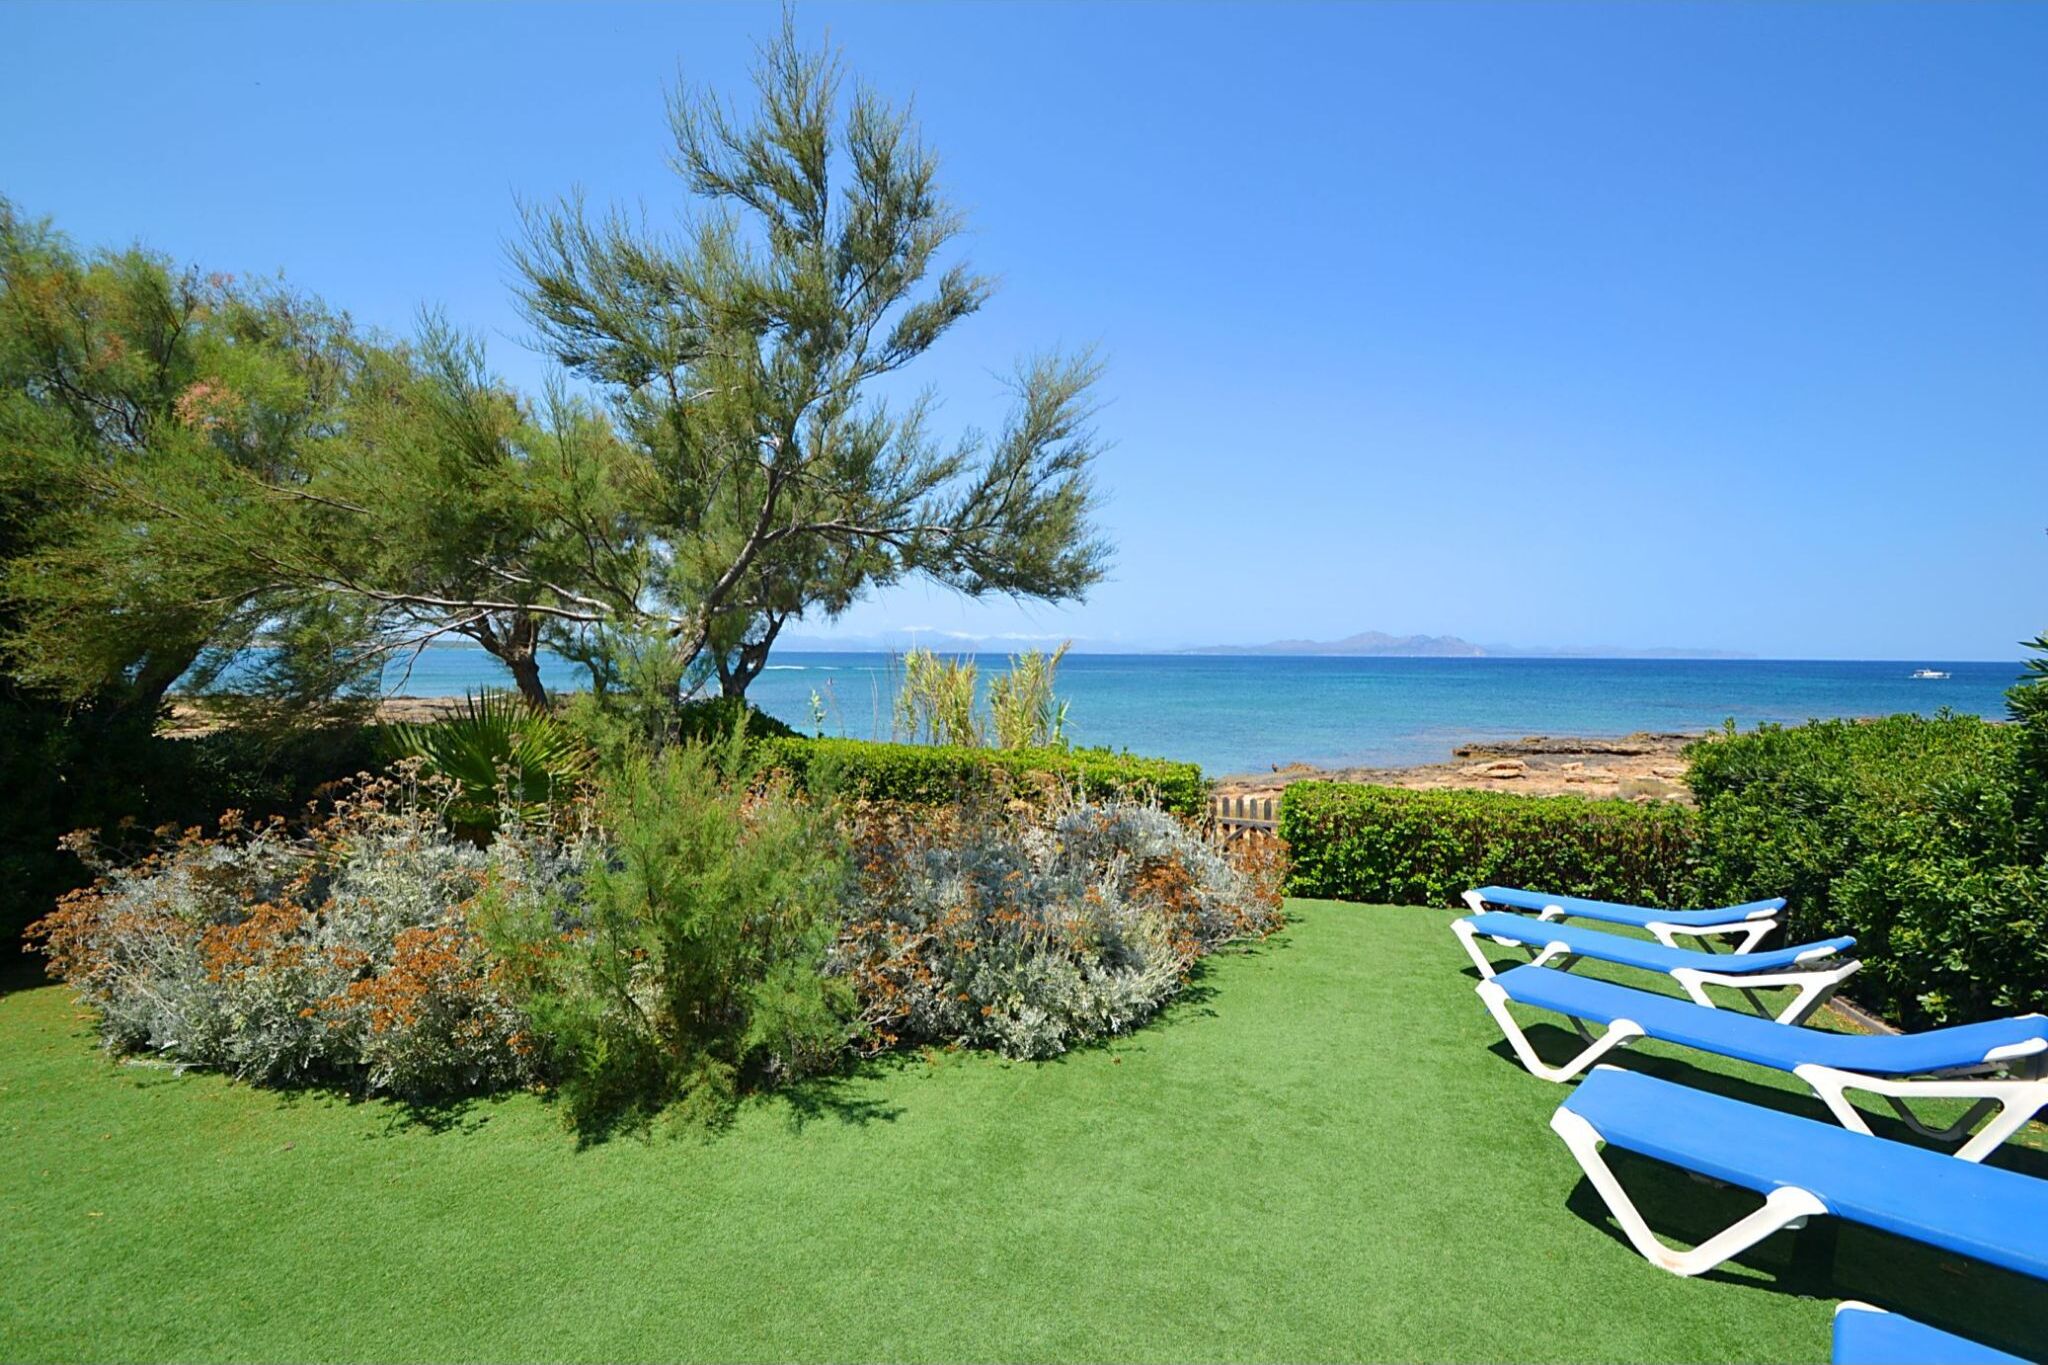 Maison de vacances reliée à seulement 200m de large plage de sable à Majorque